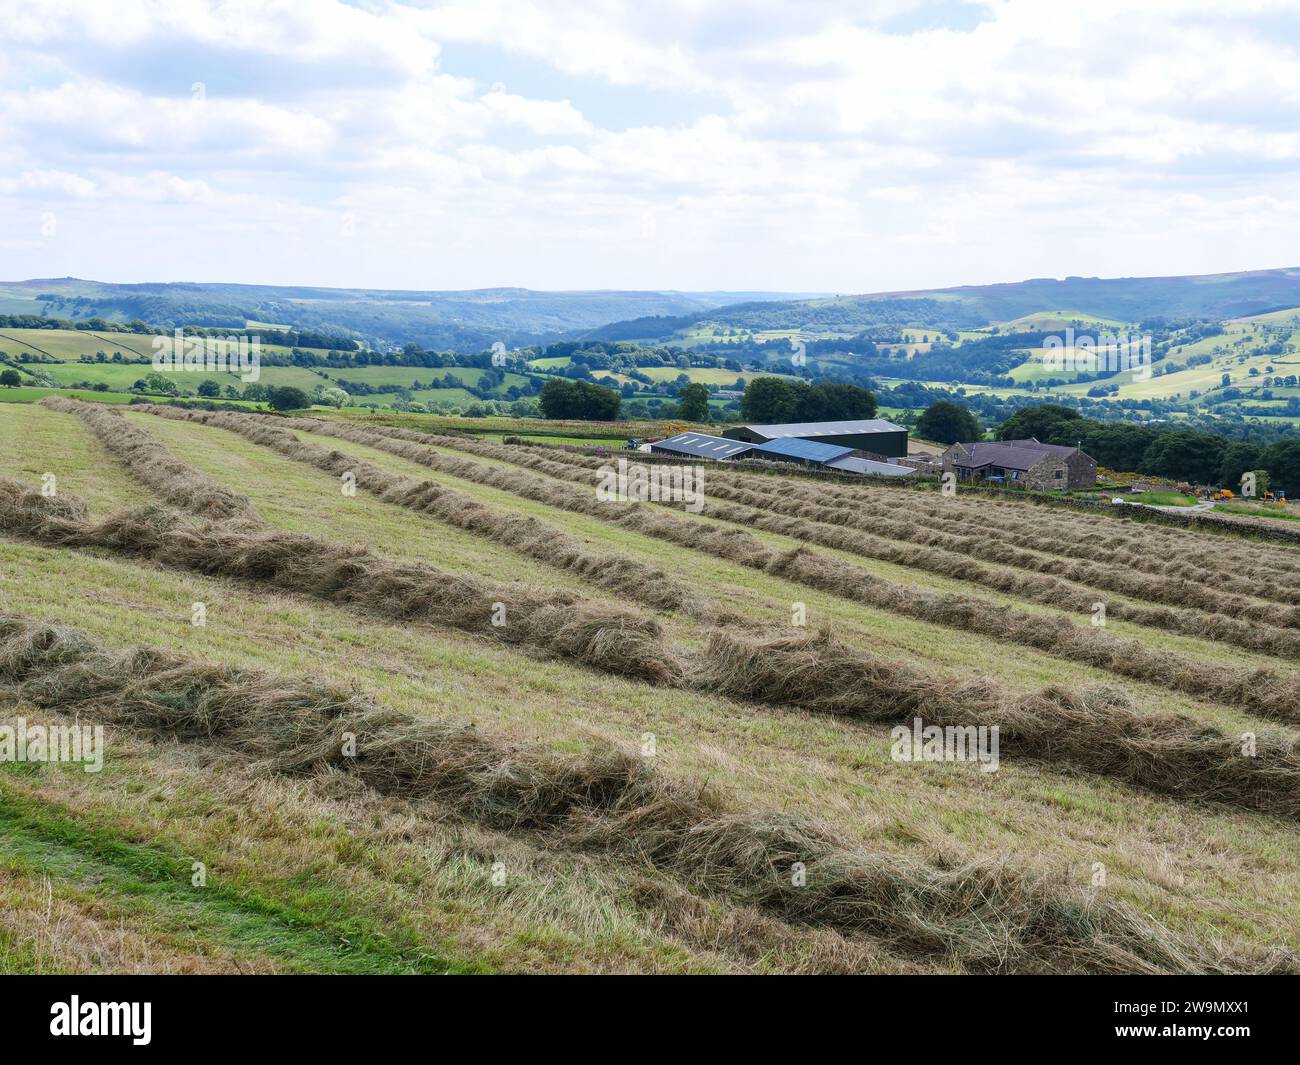 Andains de foin sec dans des terres agricoles dans une campagne anglaise vallonnée du Derbyshire dans le parc national de Peak District, Royaume-Uni. Banque D'Images